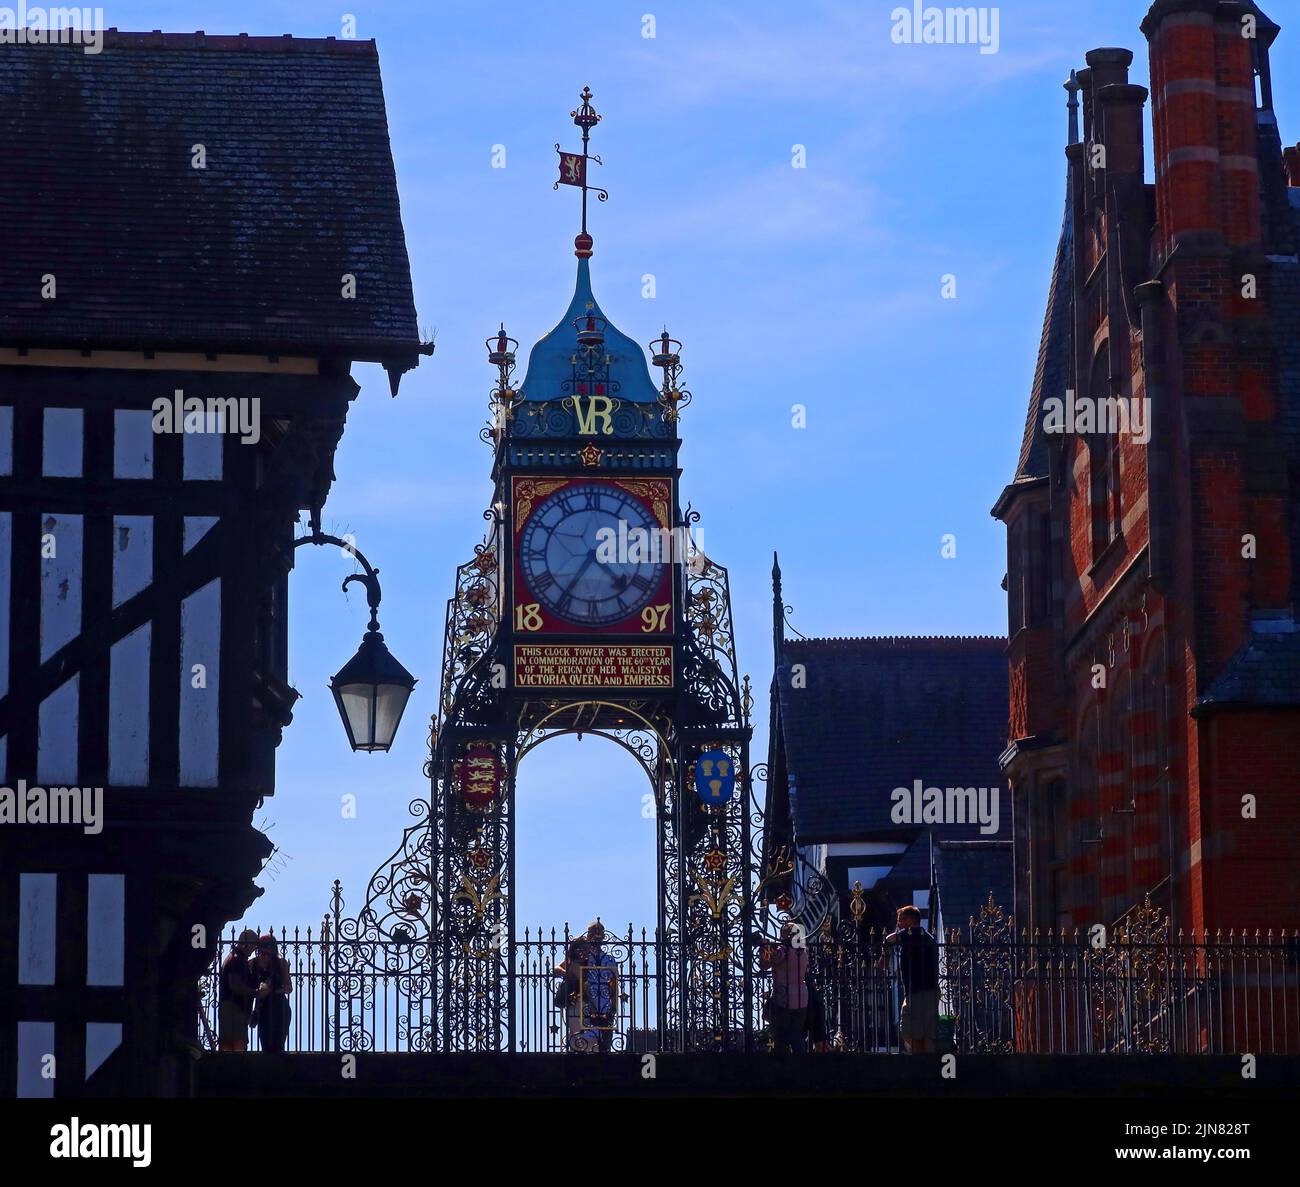 Romantisches Eastgate, mit der berühmten Eastgate Turret Clock, über dem Eastgate der antiken Mauern von Chester, Cheshire, England, Großbritannien, CH1 1LE Stockfoto